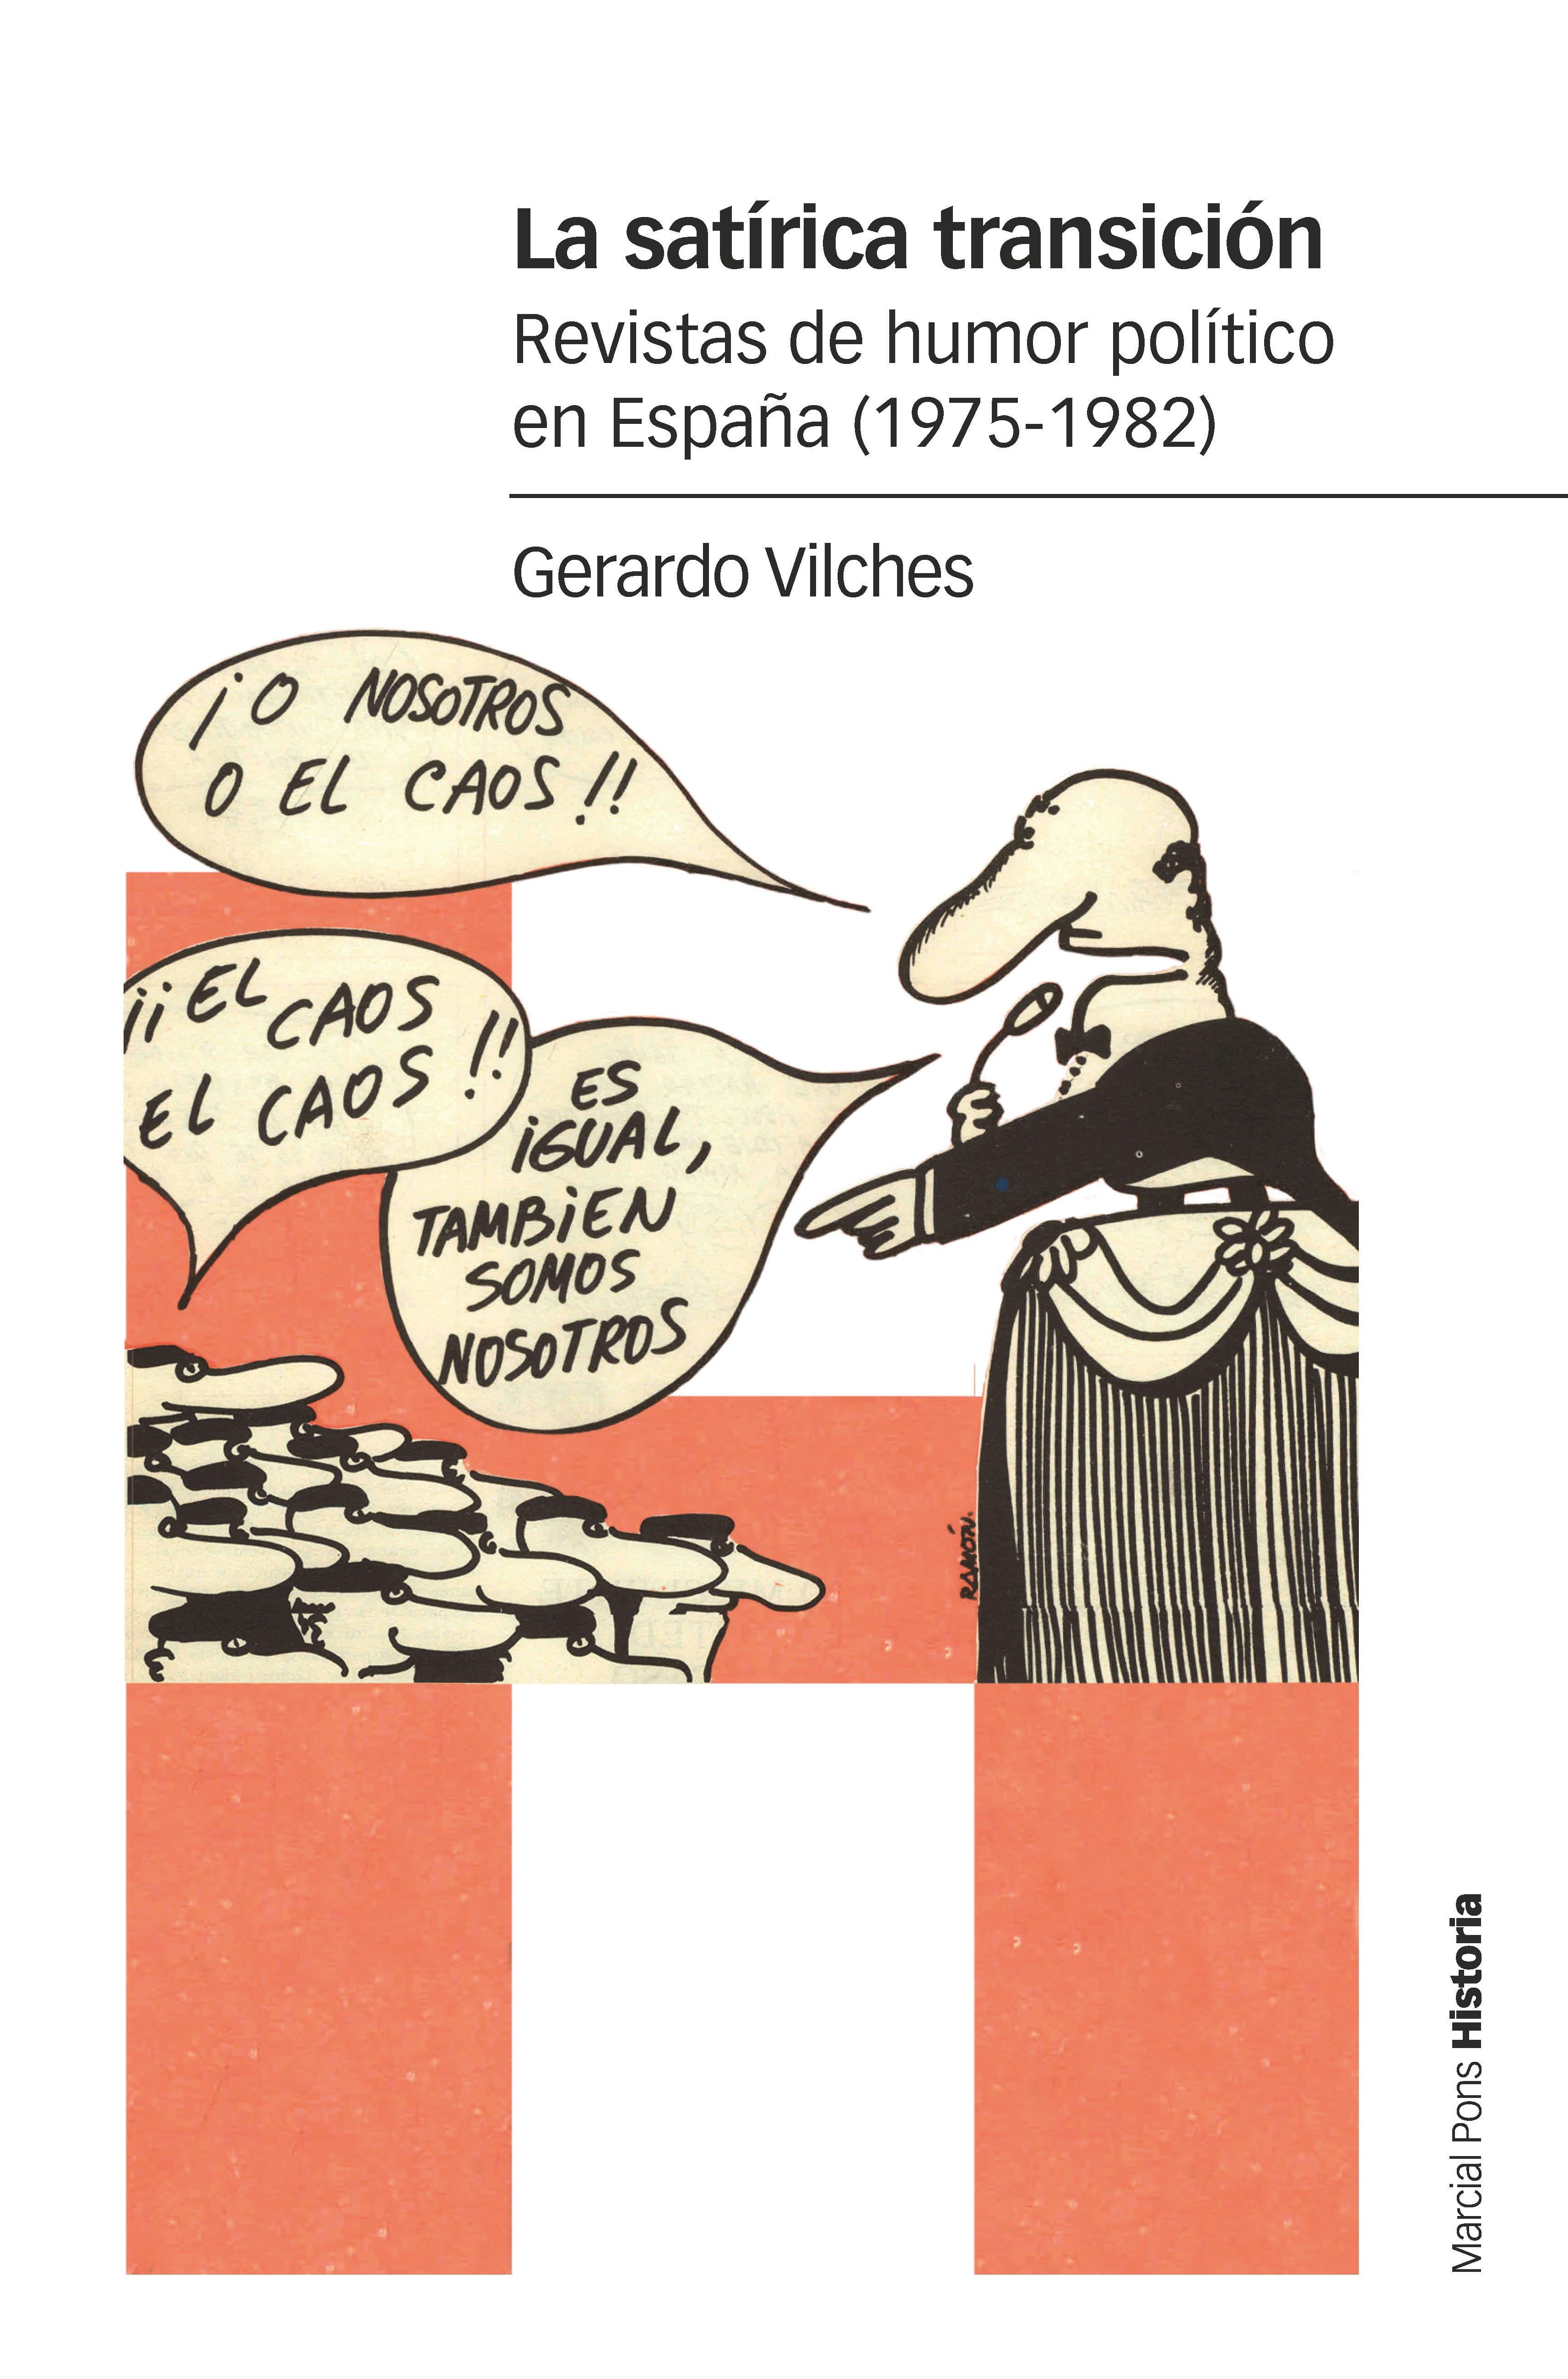 La satírica transición "Revistas de humor político en España (1975-1982)"